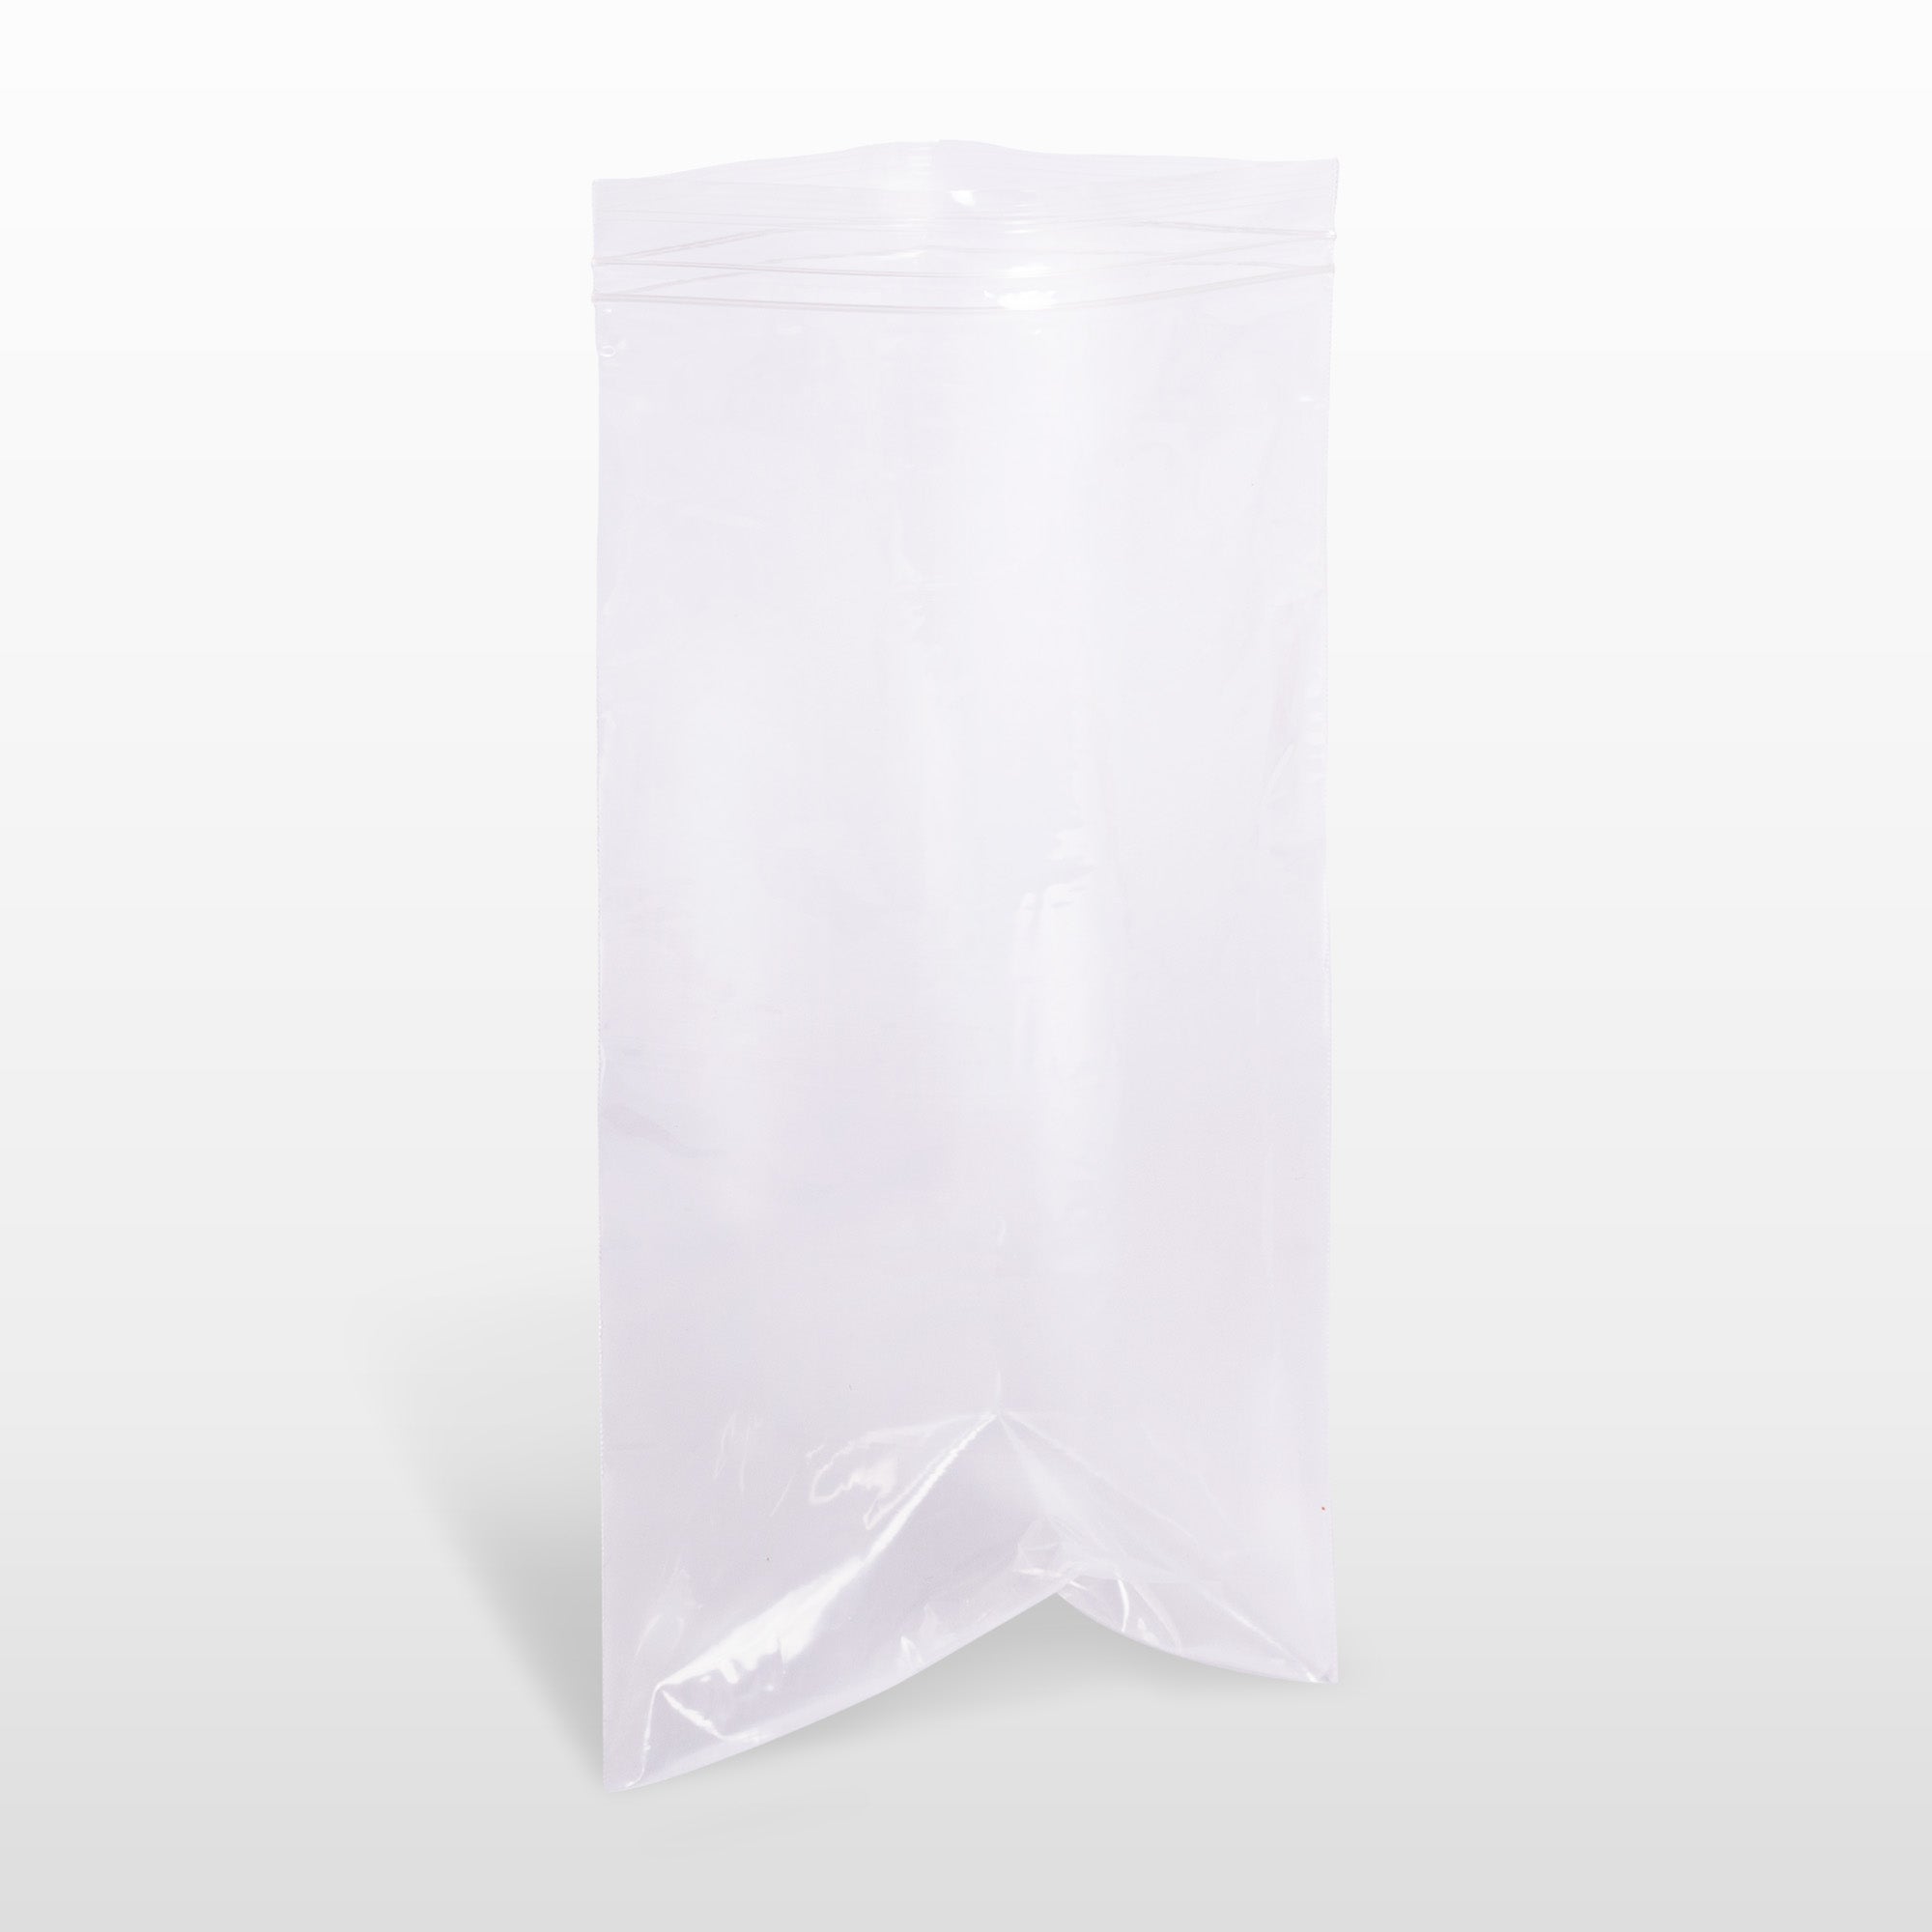 Bolsas de plástico pequeñas de 5/64 pulgadas de grosor de 0.16 pulgadas  (0.157 in), 100 bolsas de polietileno transparentes resellables con cierre  de